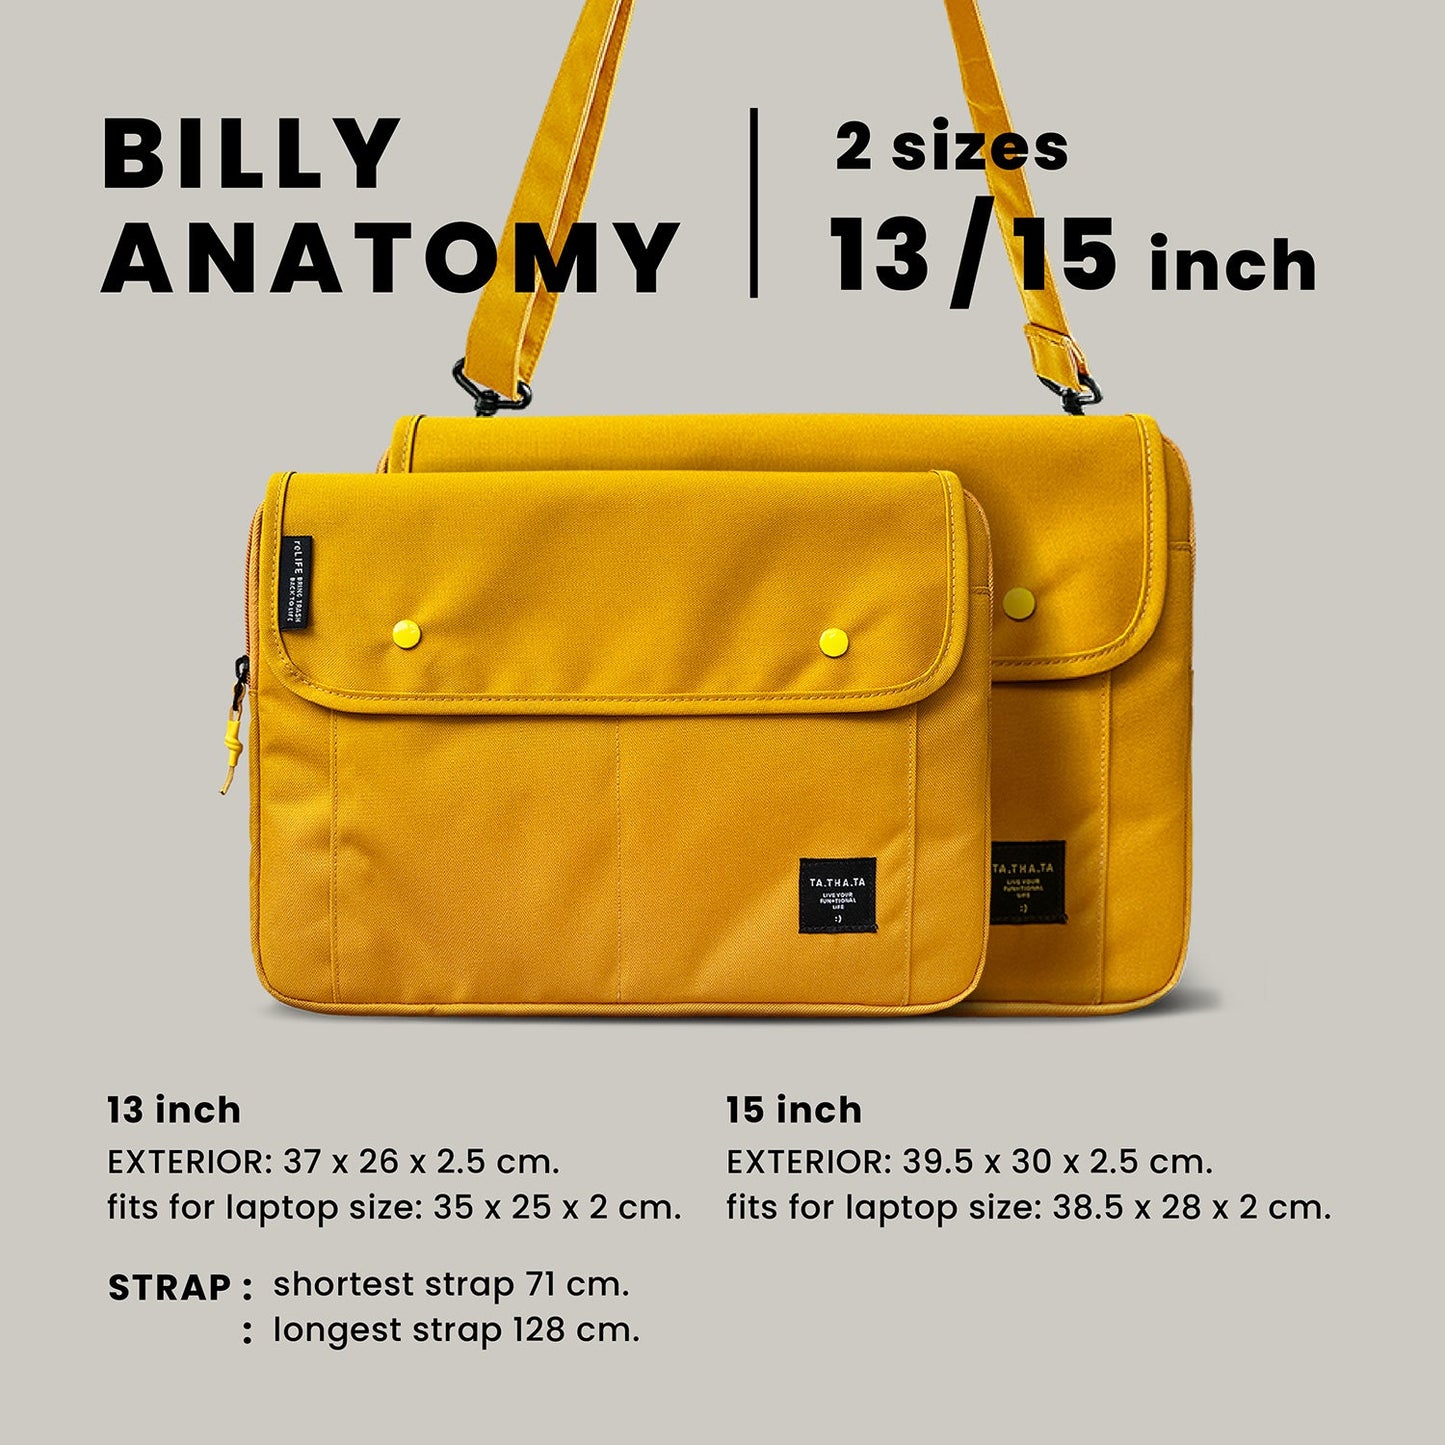 Billy relife mustard laptop bag